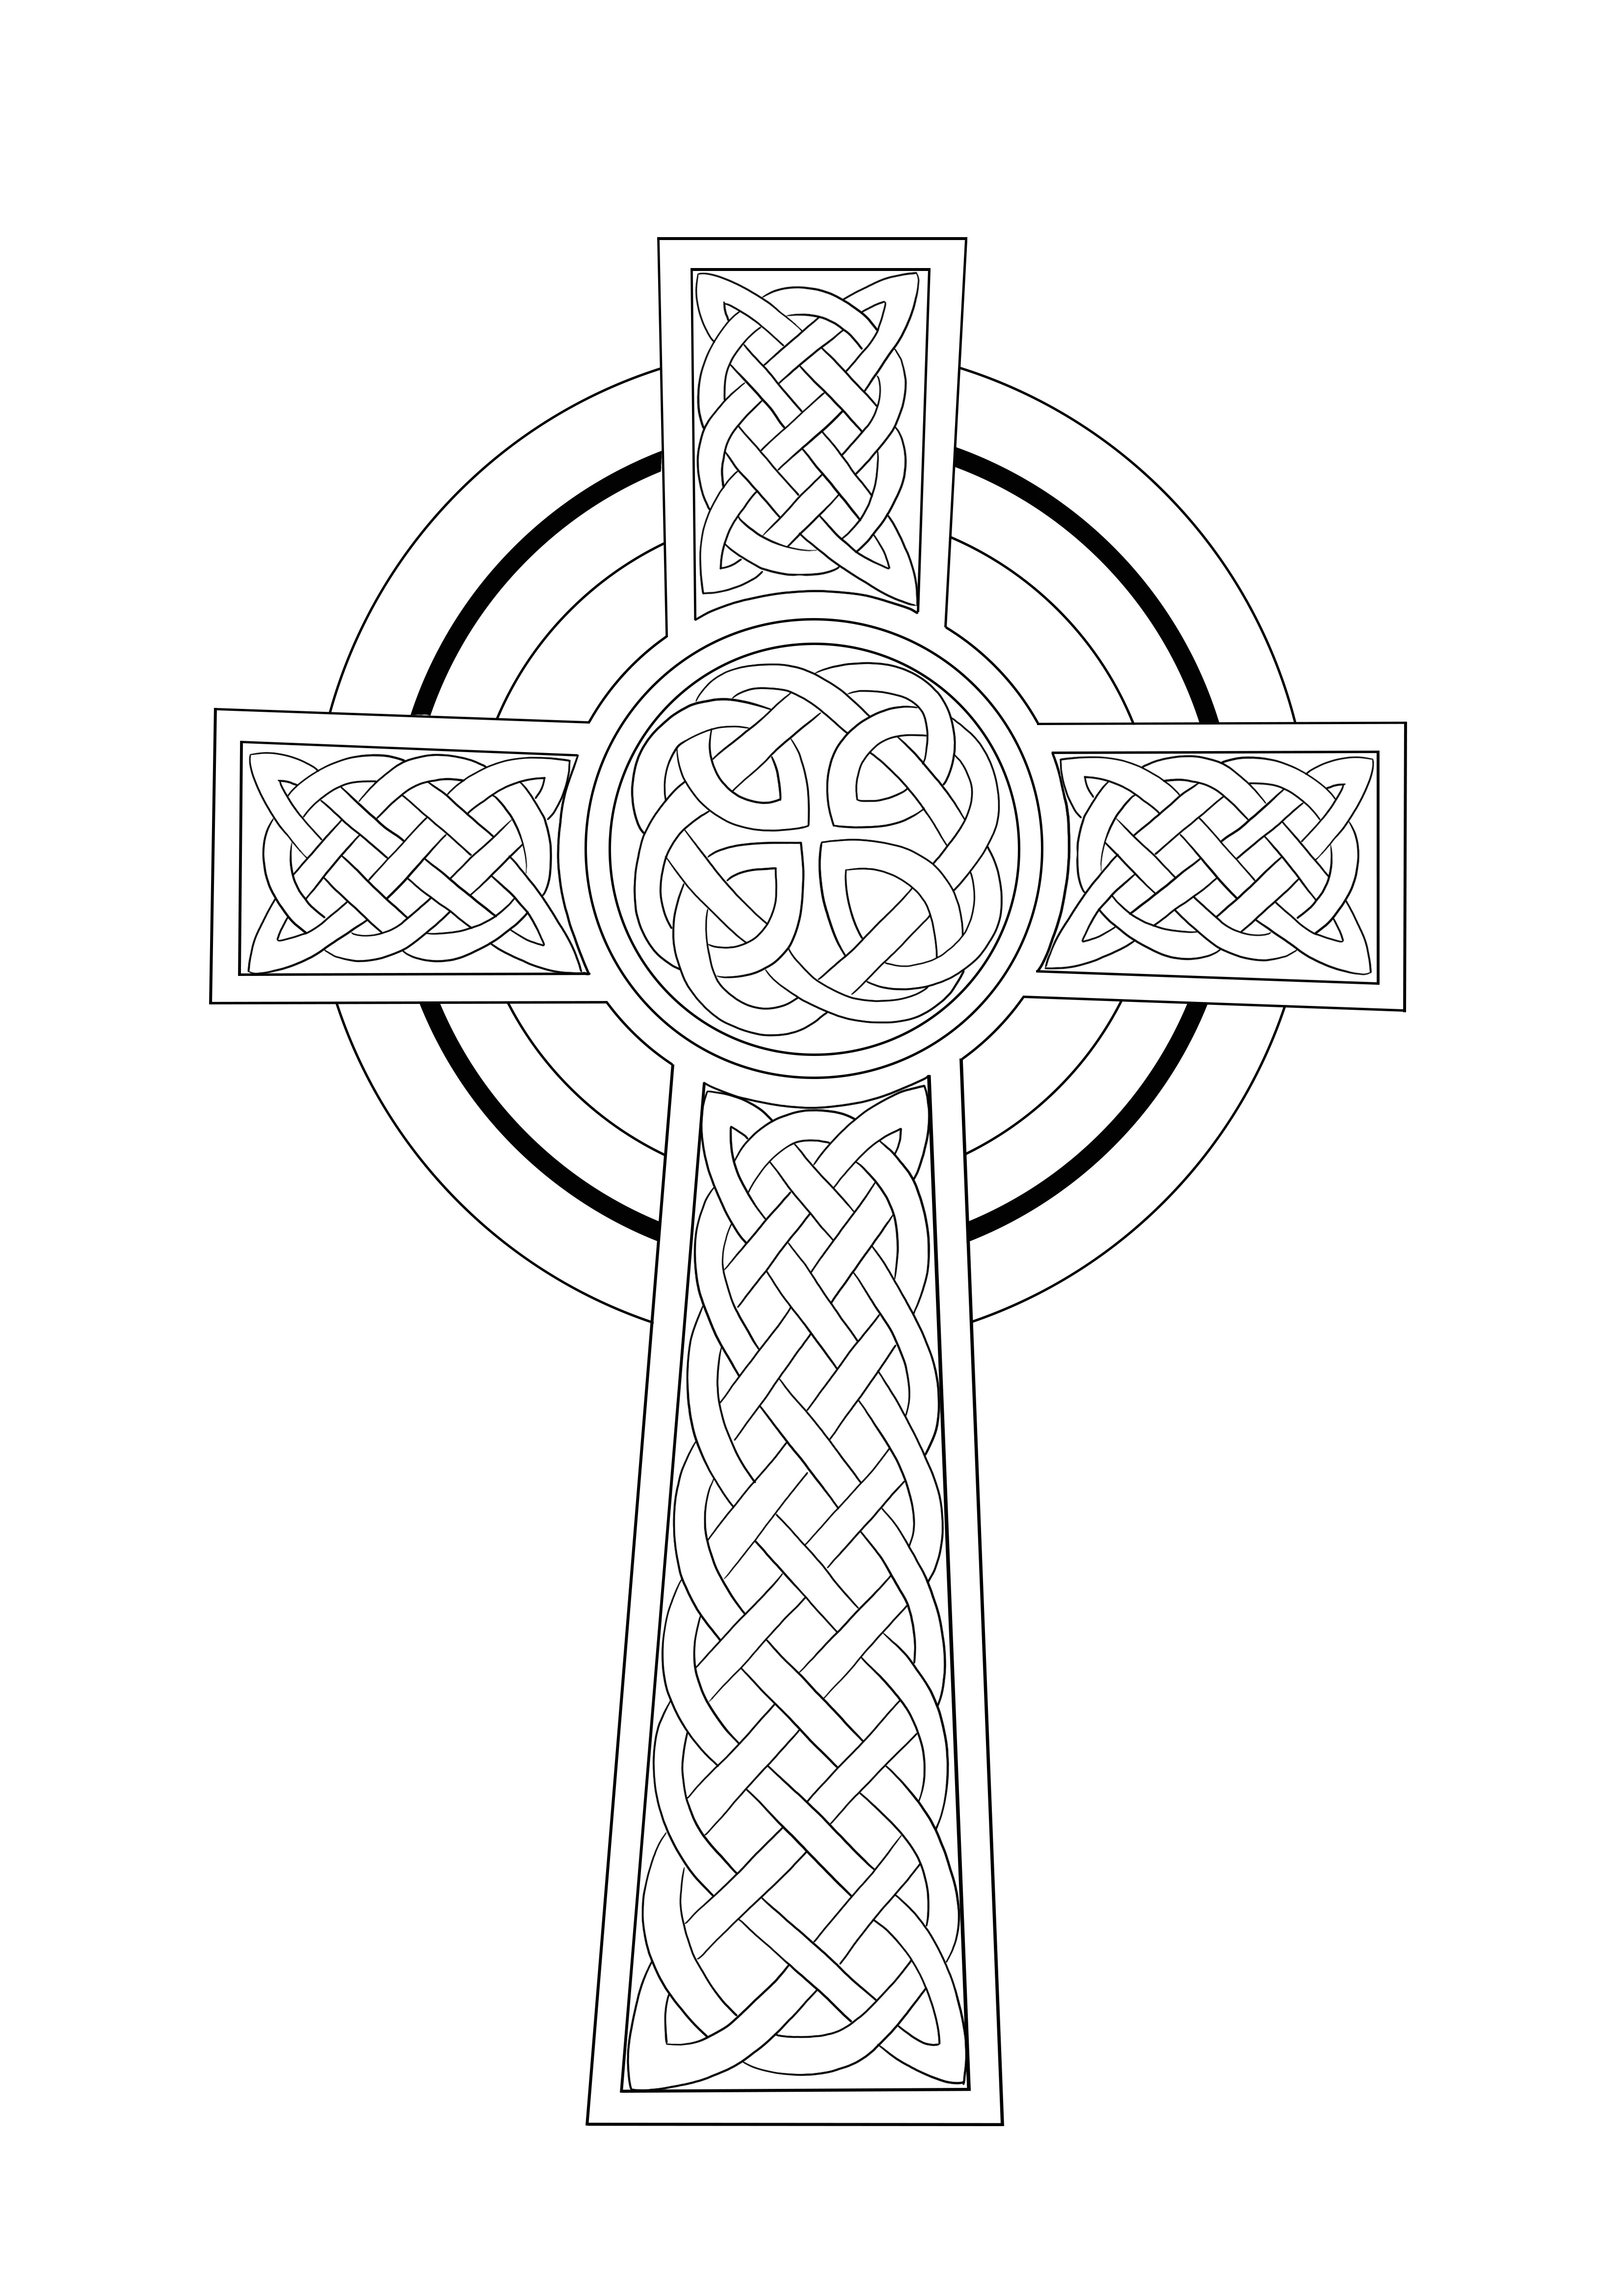 Foglio da colorare con croce celtica gratuito da scaricare o salvare per dopo